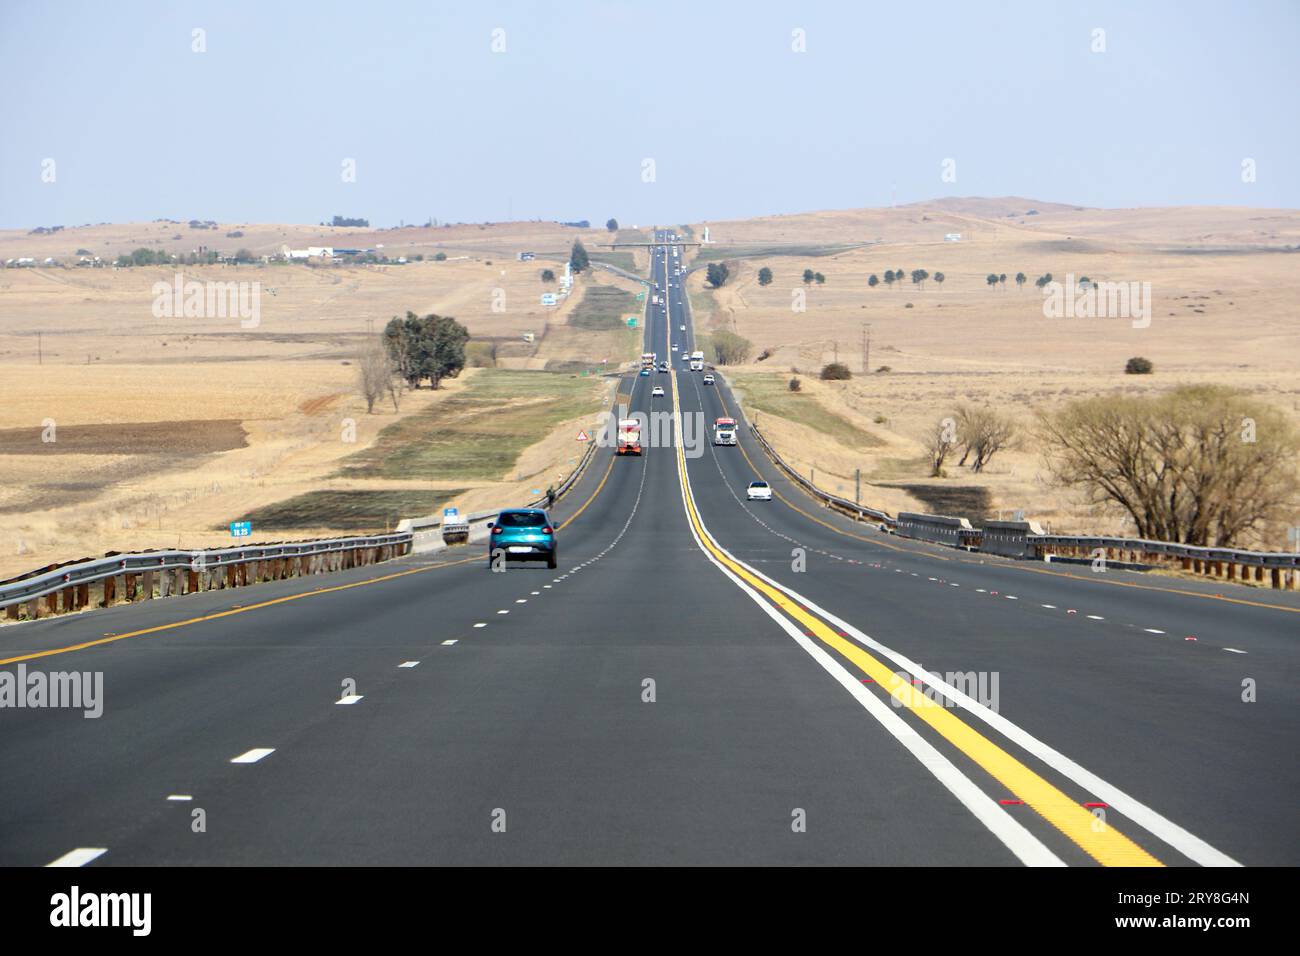 Die Autobahn N3 zwischen Durban und Johannesburg aus Sicht der Fahrer, die Autobahn bis zum Horizont mit Autos und Lkws und trockener Landschaft Stockfoto